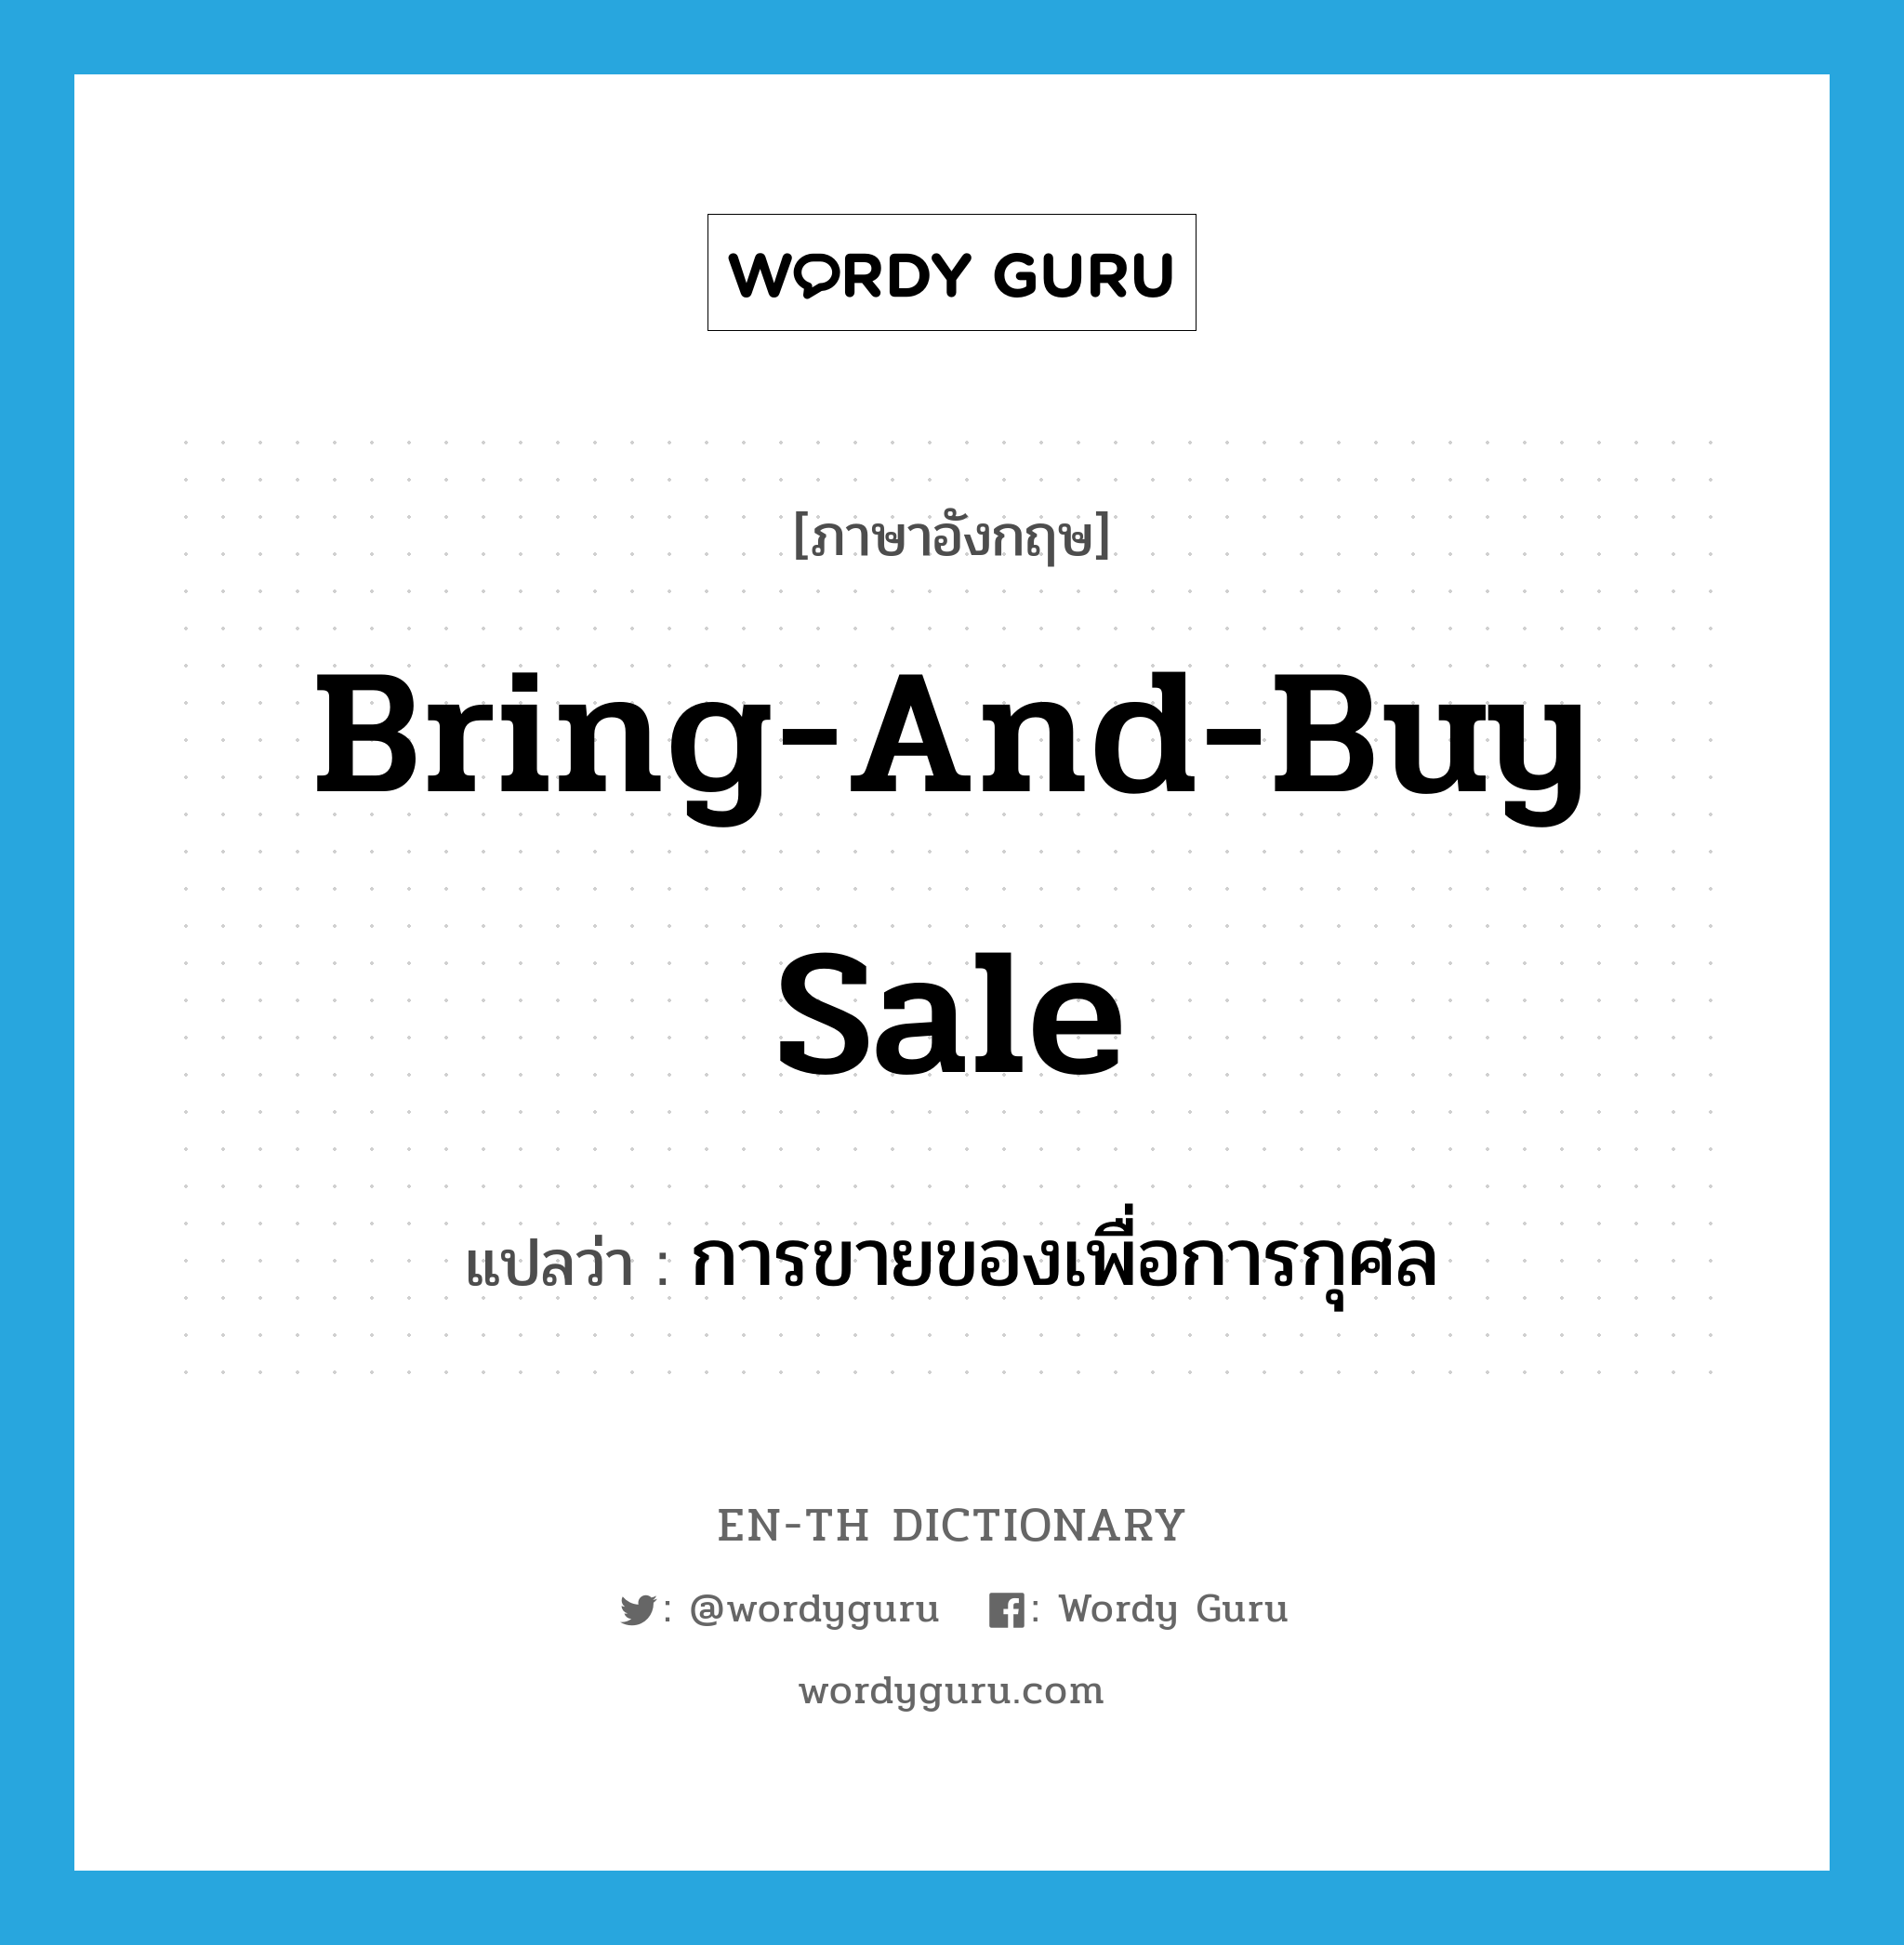 การขายของเพื่อการกุศล ภาษาอังกฤษ?, คำศัพท์ภาษาอังกฤษ การขายของเพื่อการกุศล แปลว่า bring-and-buy sale ประเภท N หมวด N